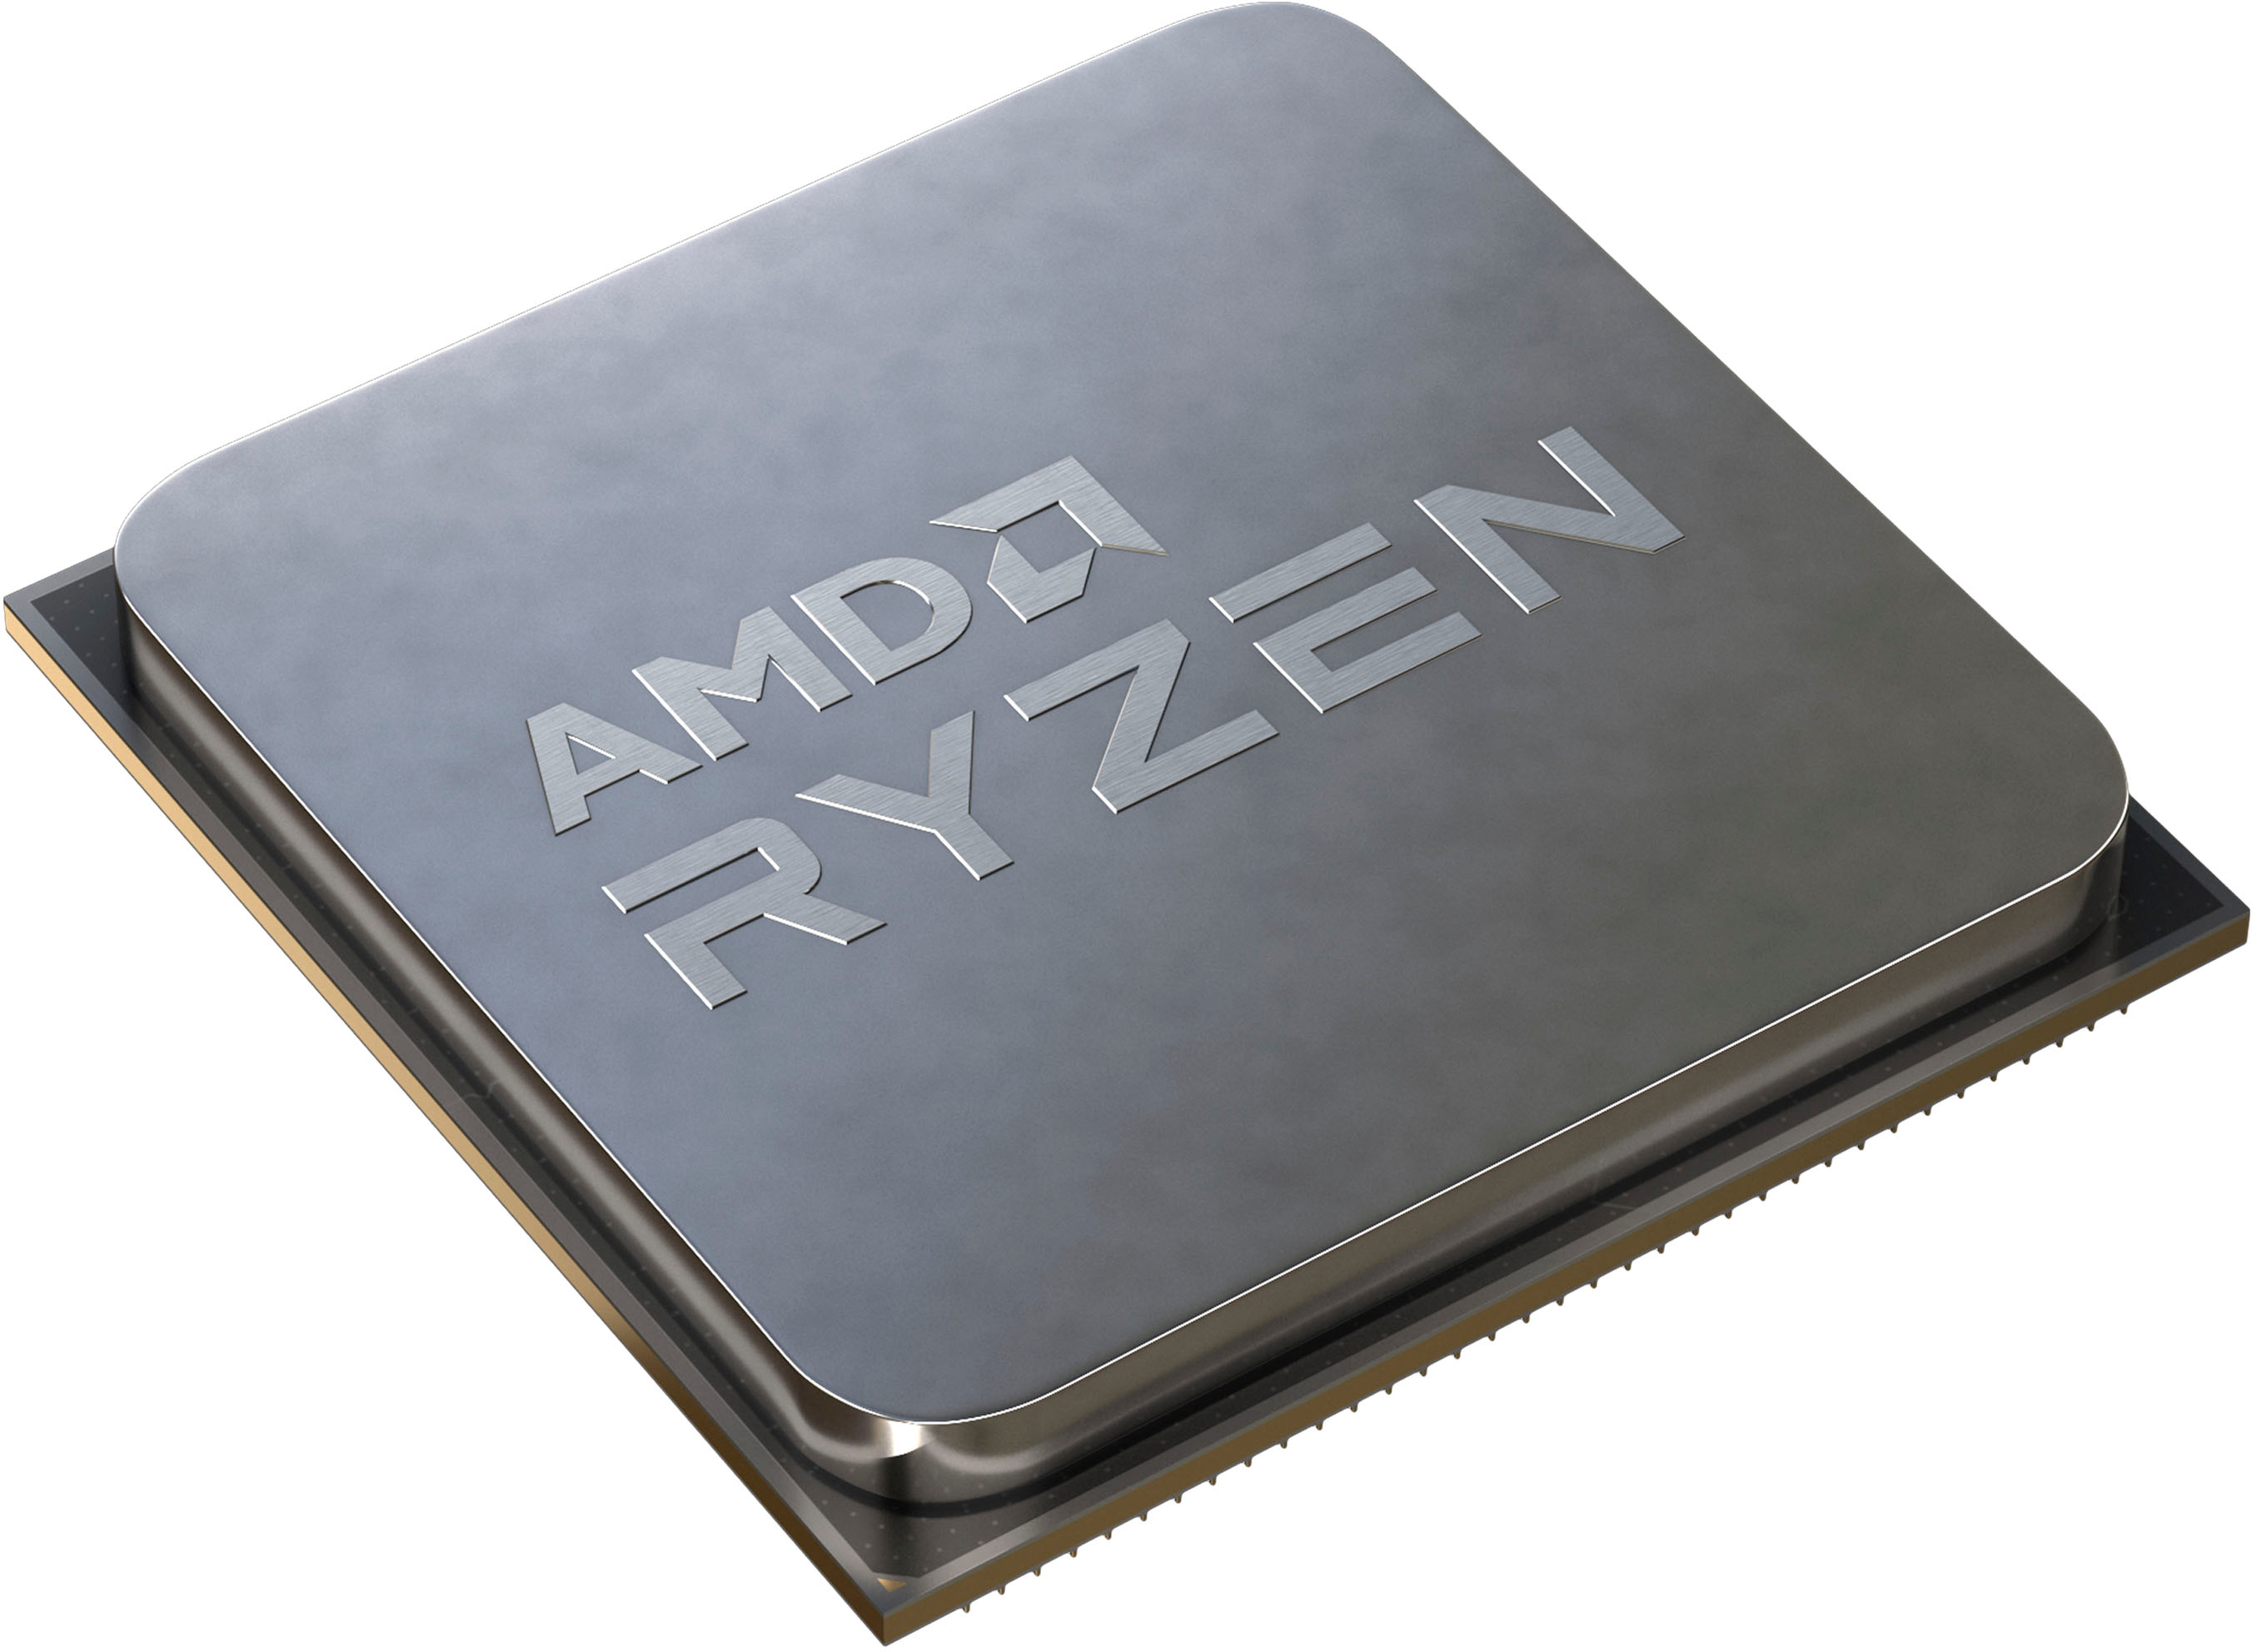 AMD Ryzen 7 5700X W/O Fan Black 100-100000926WOF - Best Buy